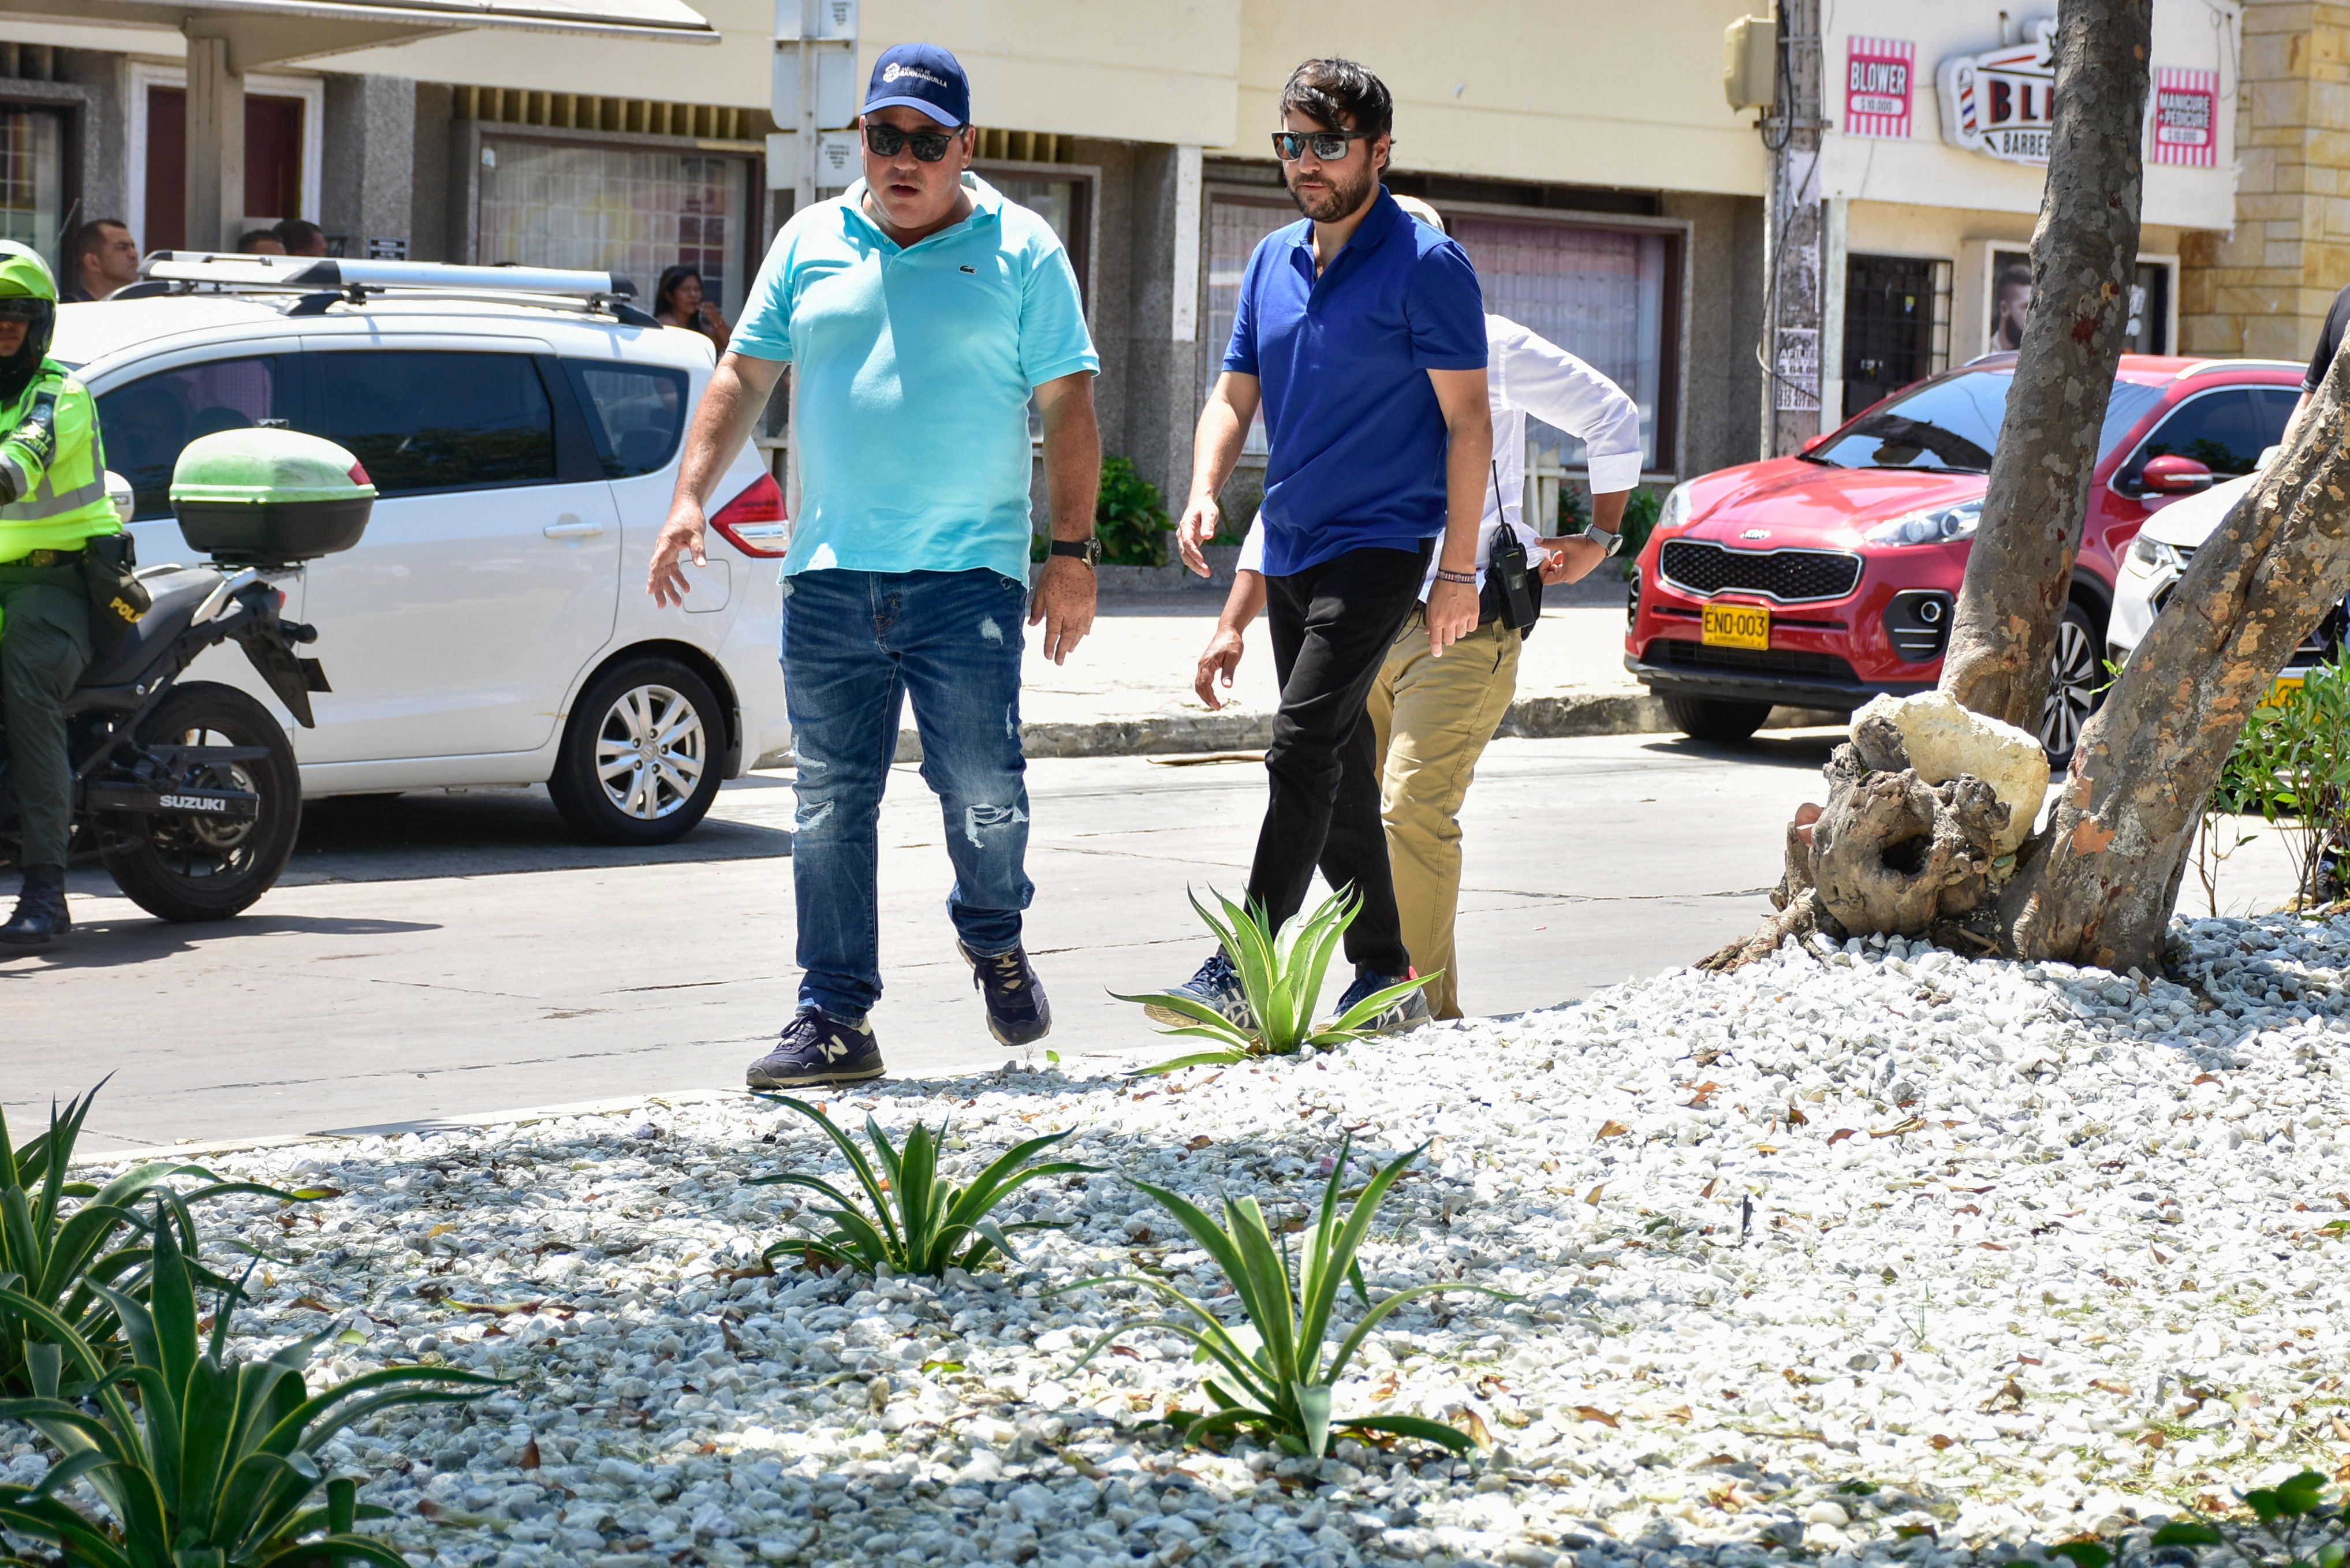 “Estamos recuperando 50.000 metros cuadrados en los bulevares de la ciudad, más espacio público y zonas verdes para todos”: alcalde Pumarejo